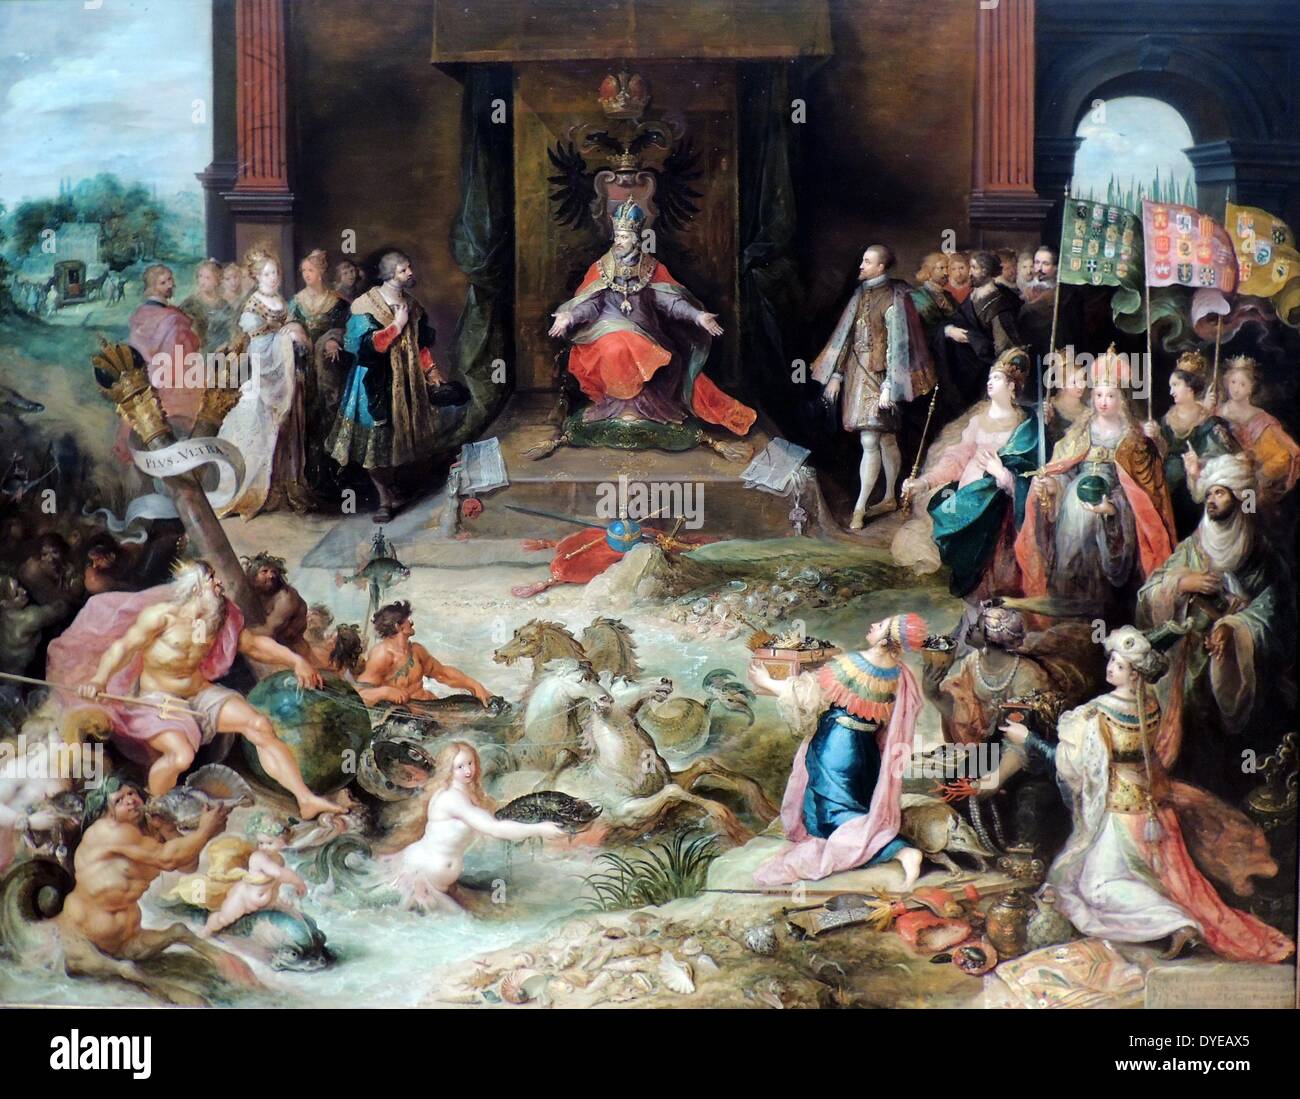 Allegorie auf die Abdankung von Kaiser Karl V in Brüssel. Frans Francken II (1581-1642), Öl auf Leinwand, (c) 1630-1640 Charles V in der Mitte thront. Schlacht erschöpft und von Krankheit geplagt, im Jahr 1555 er sein Reich geteilt. Er gab seinem Bruder Ferdinand (von links) den Thron des Heiligen Römischen Reiches, während sein Sohn Phillip (rechts) König von Spanien wurde und Herr der Niederlande. Die vier Figuren im Vordergrund rechts verkörpern den Kontinenten über die Charles des riesigen Reiches gestreckt. Neptun (links) symbolisiert seine Macht auf See. Stockfoto